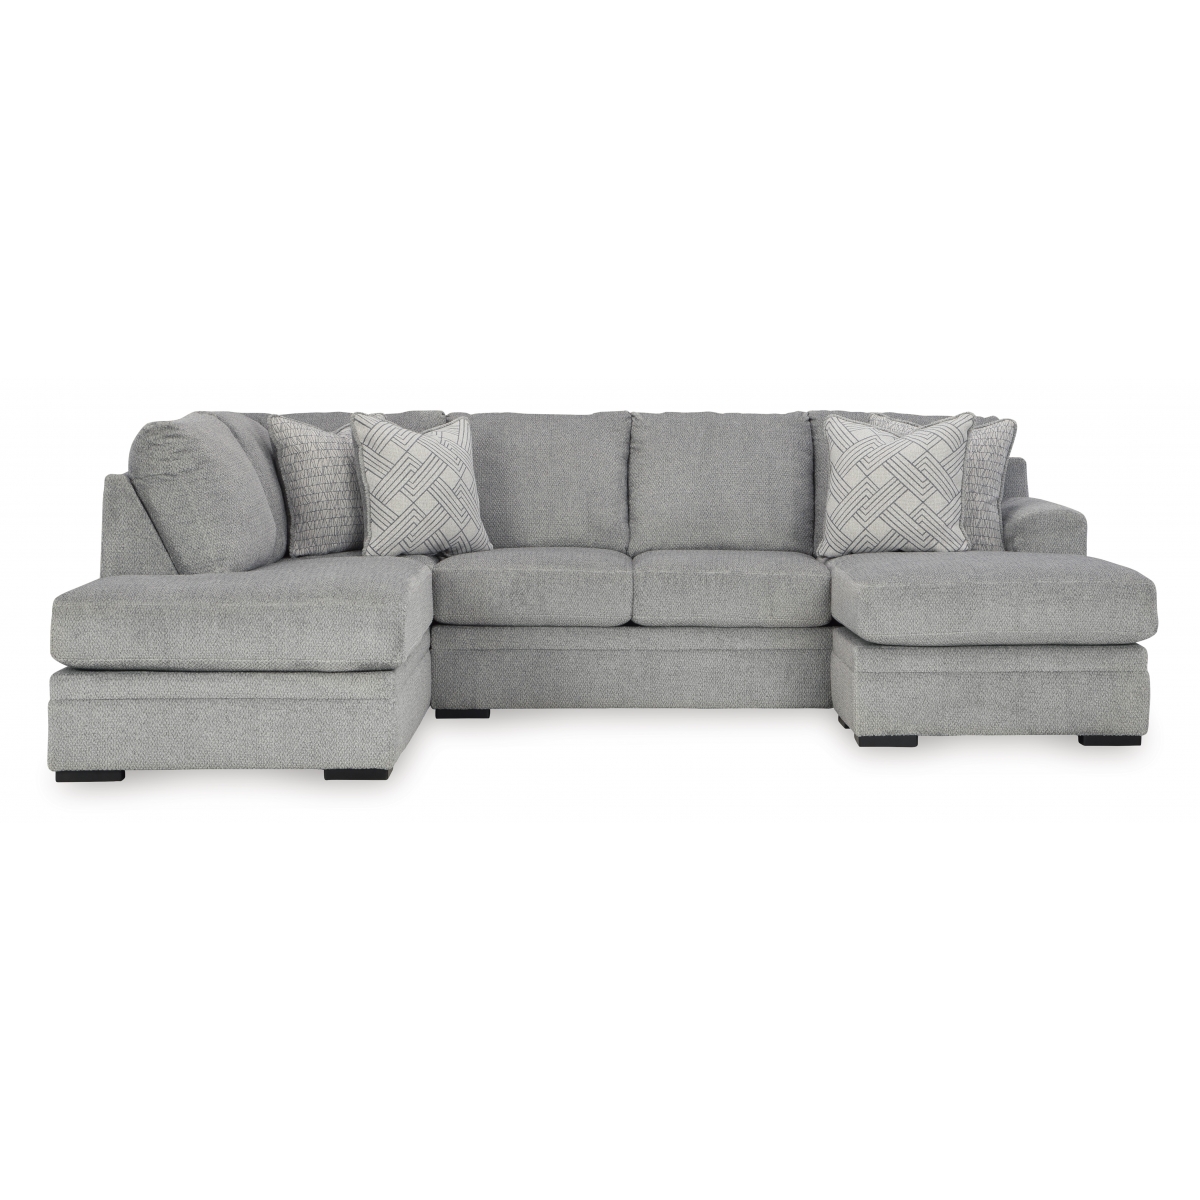 PORCHE & CO. :: Sofa & Sectional Throw Pillow Size Guide — Porche